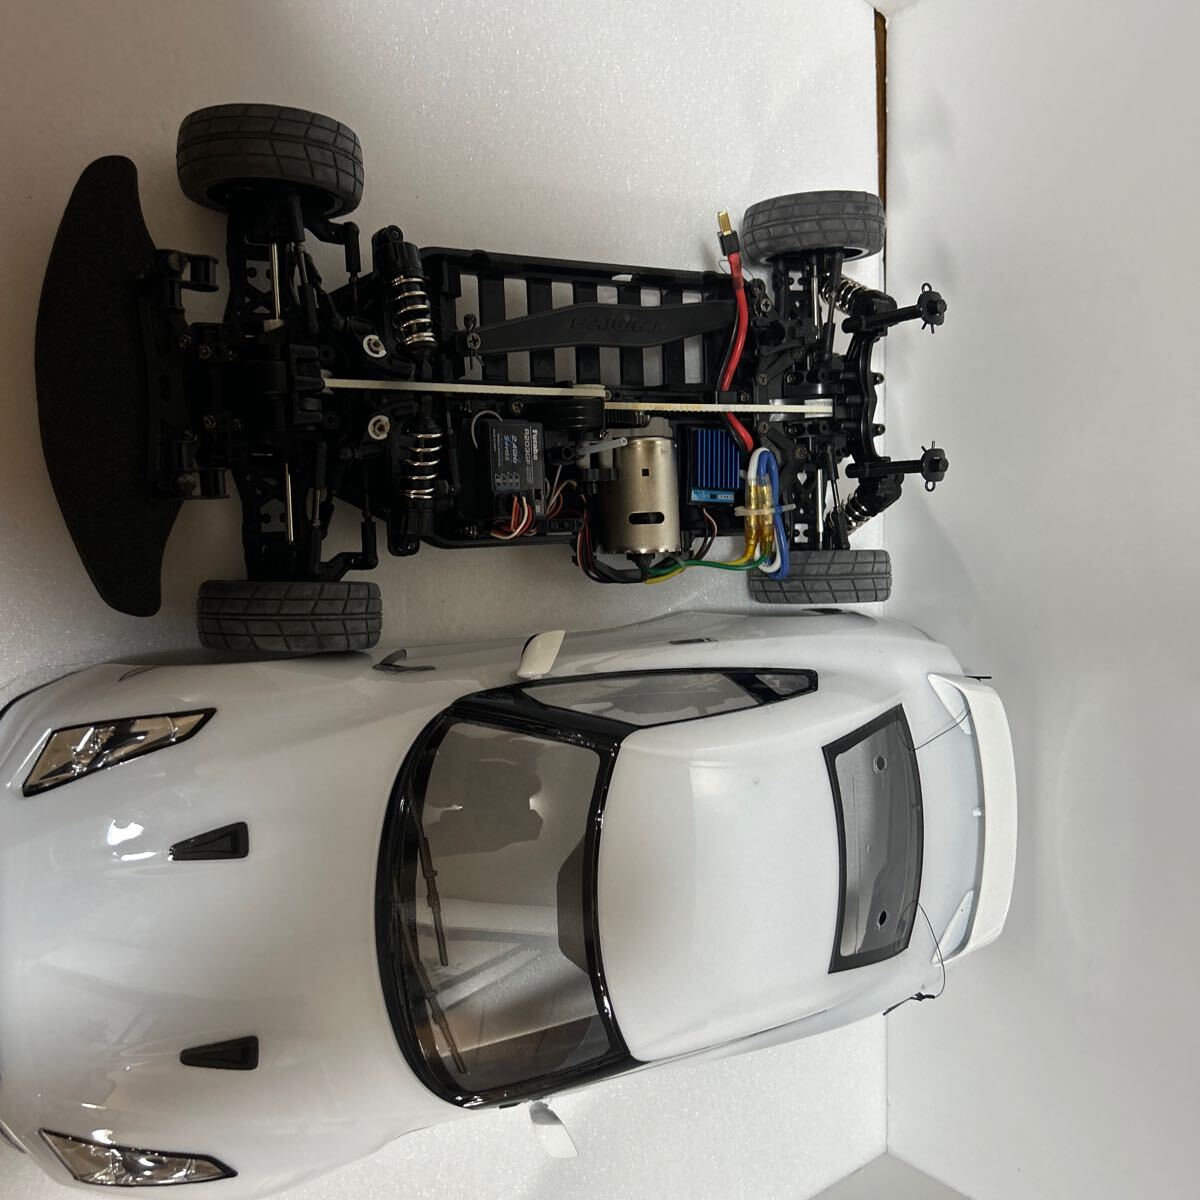  Tamiya 1/10 электрический RC4WD гоночный автомобиль TA05ver.II шасси MOTUL NISMO GT-R Tokachi 24hours Race механизм имеется, с руководством пользователя 